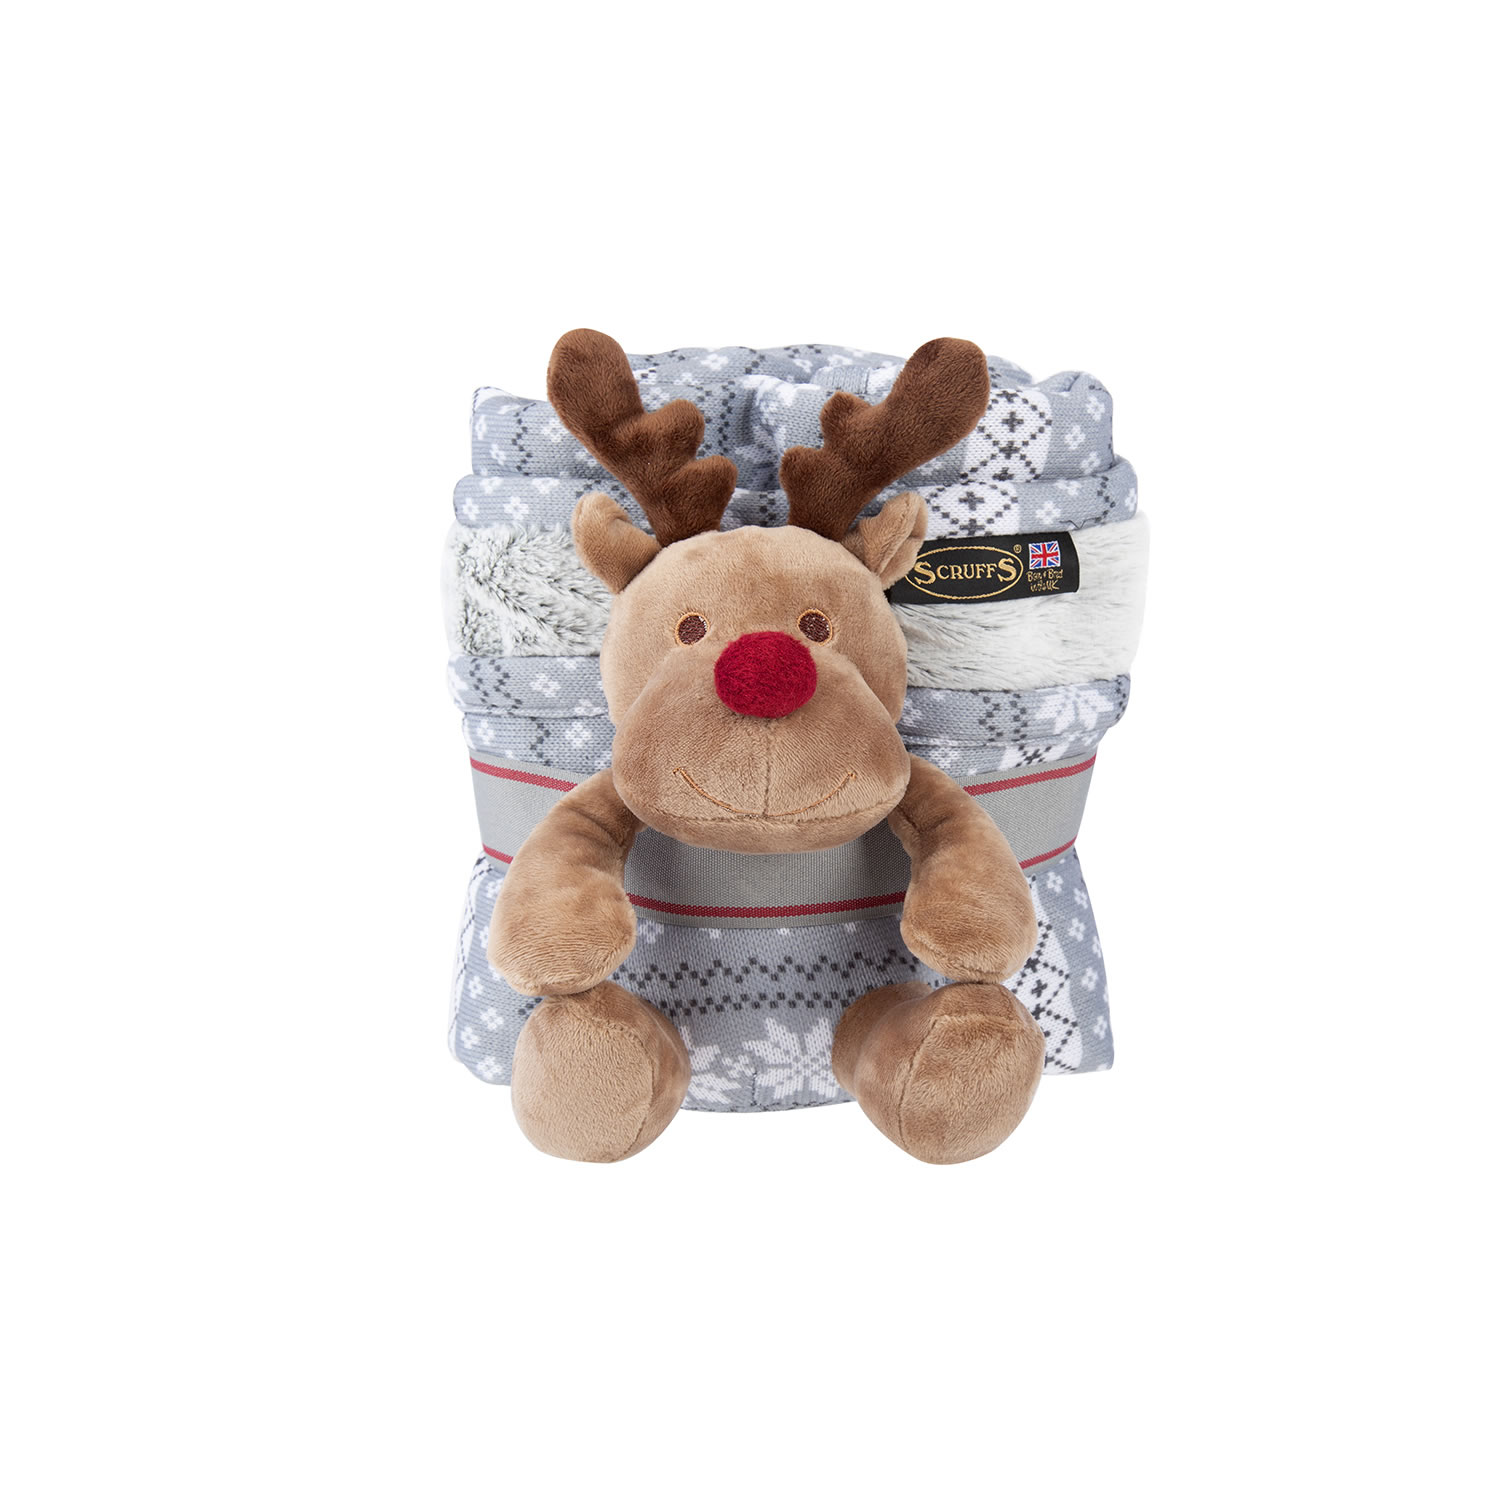 Scruffs Santa Paws Blanket & Toy Set